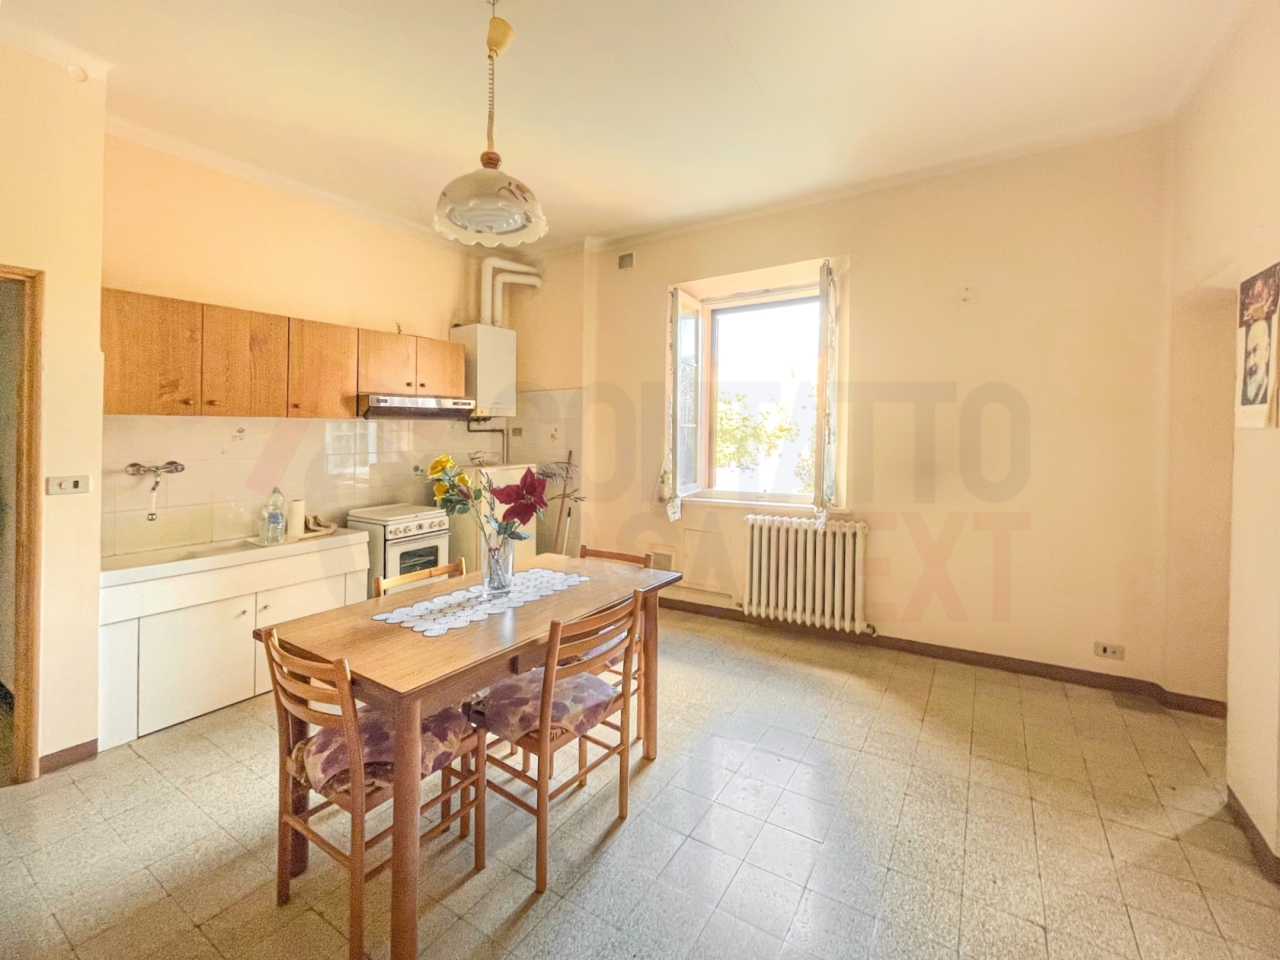 Appartamento in vendita a Jesi, 9999 locali, prezzo € 65.000 | PortaleAgenzieImmobiliari.it